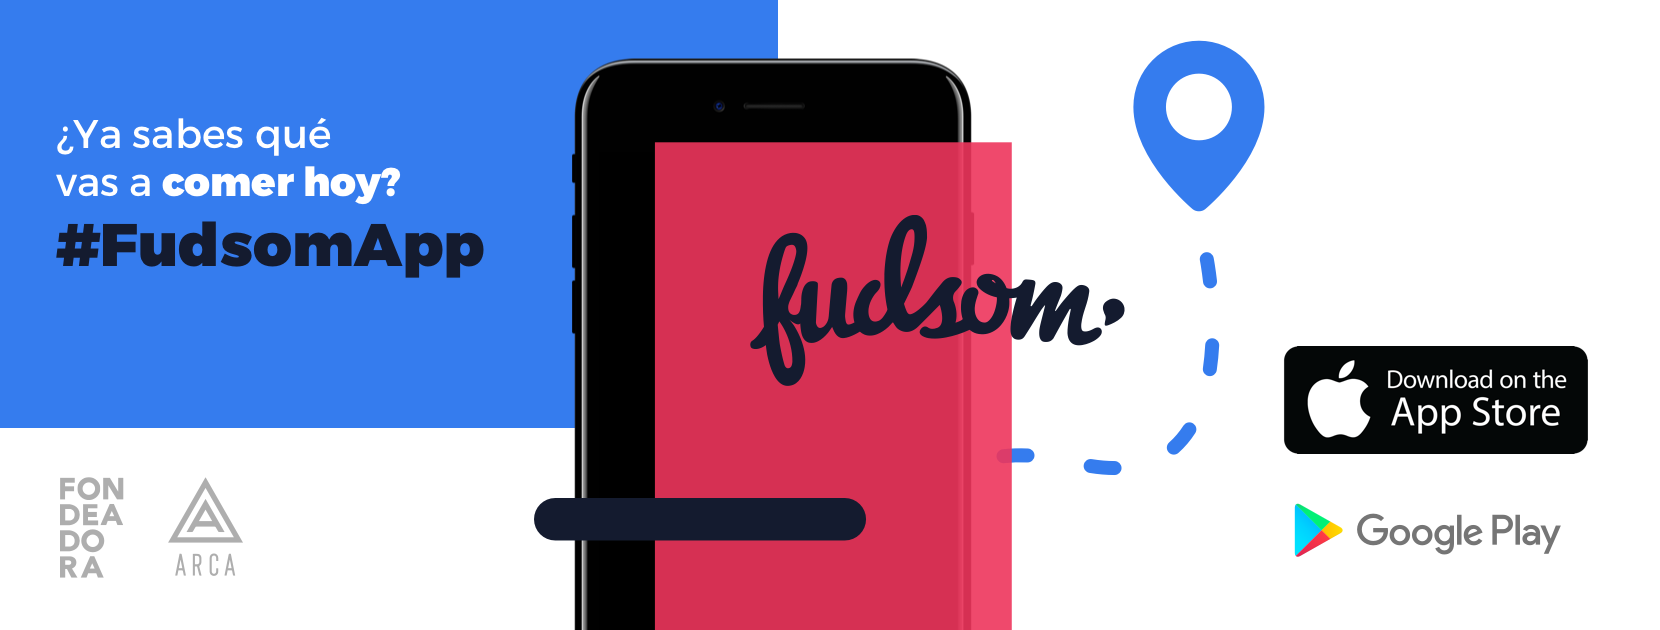 Fudsom App